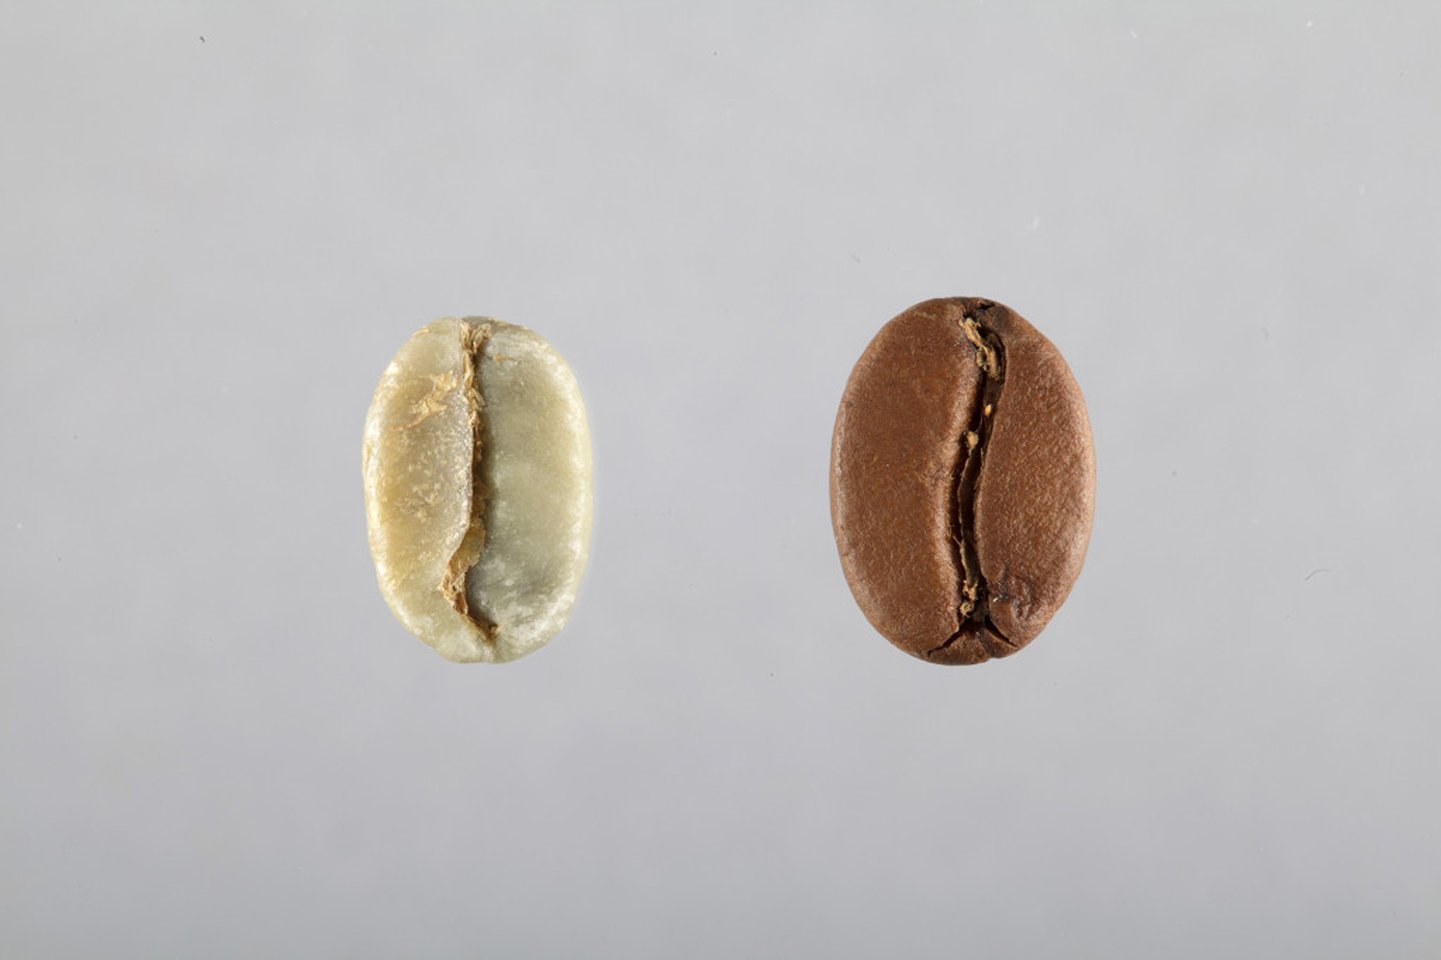 Grain de café, comment l'extraire ? - Syndicat Français du Café